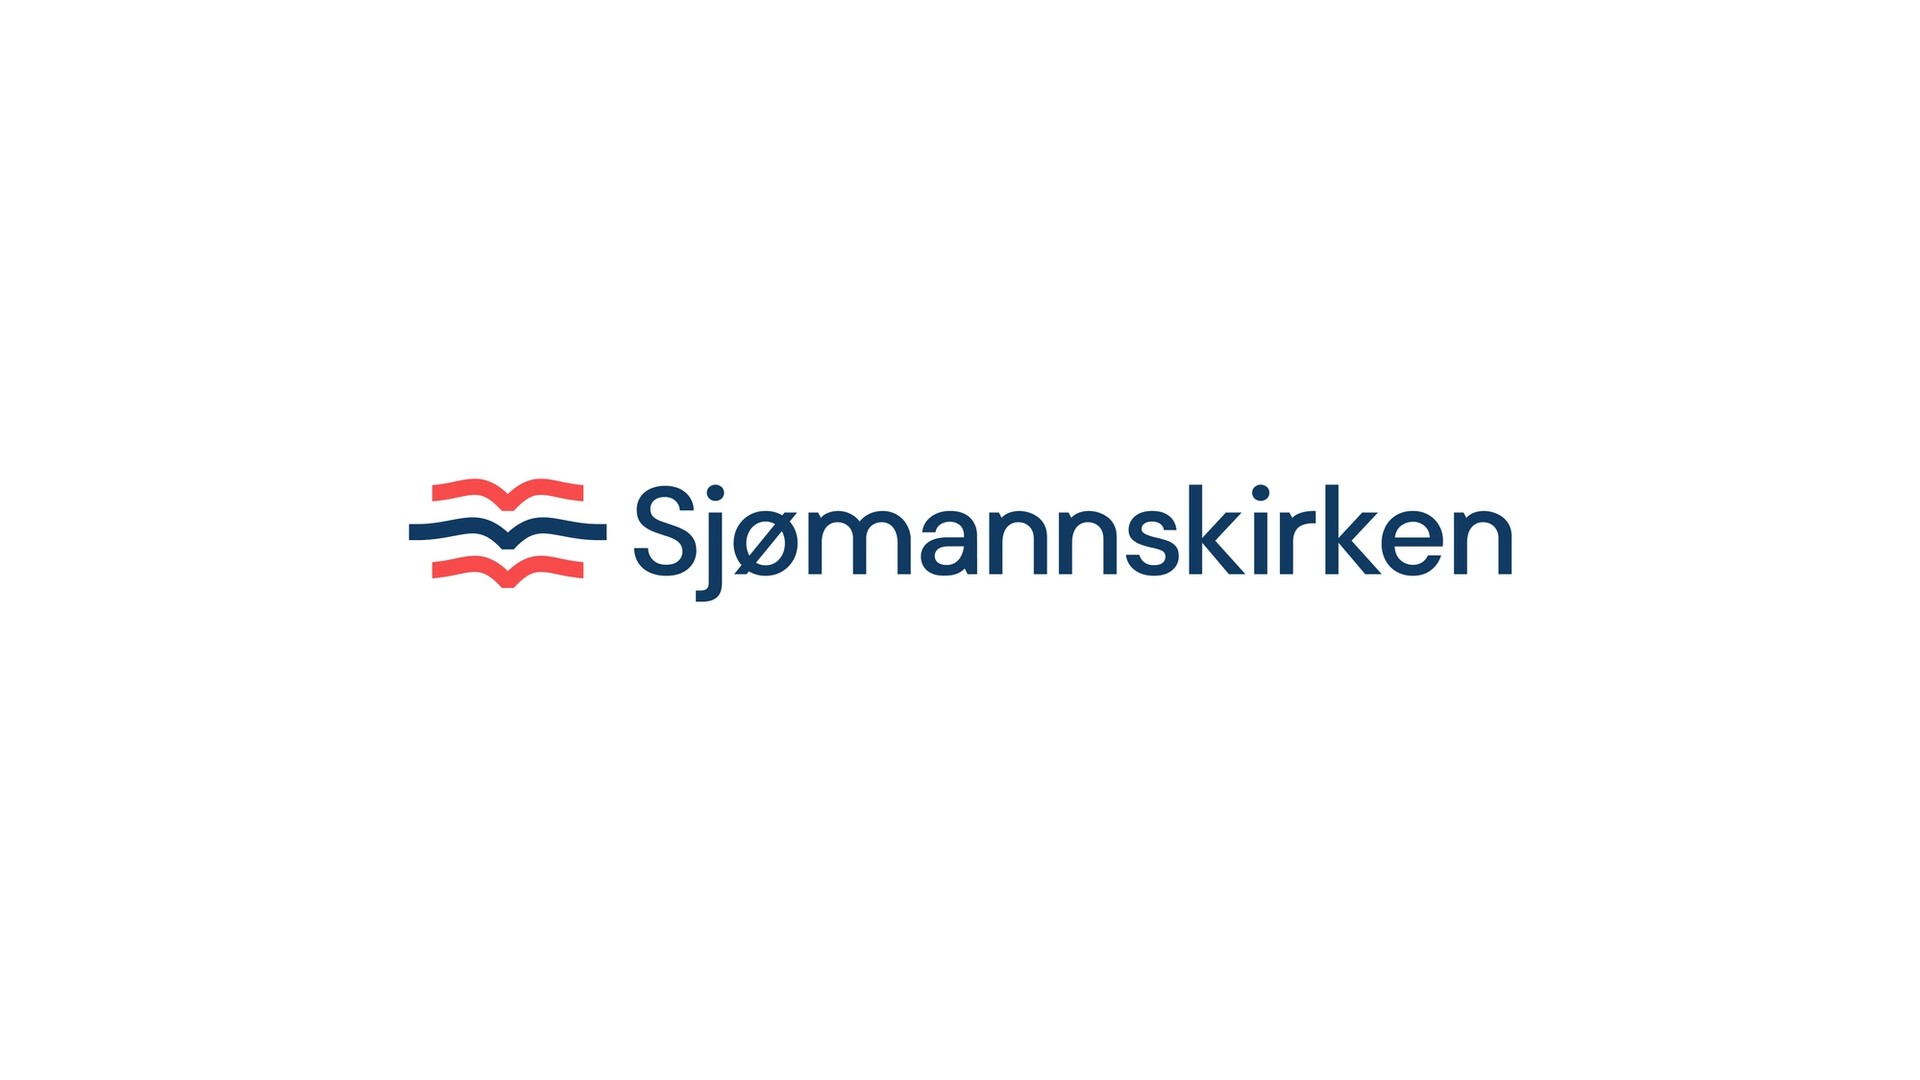 Sjømannskirken blue logo on white background